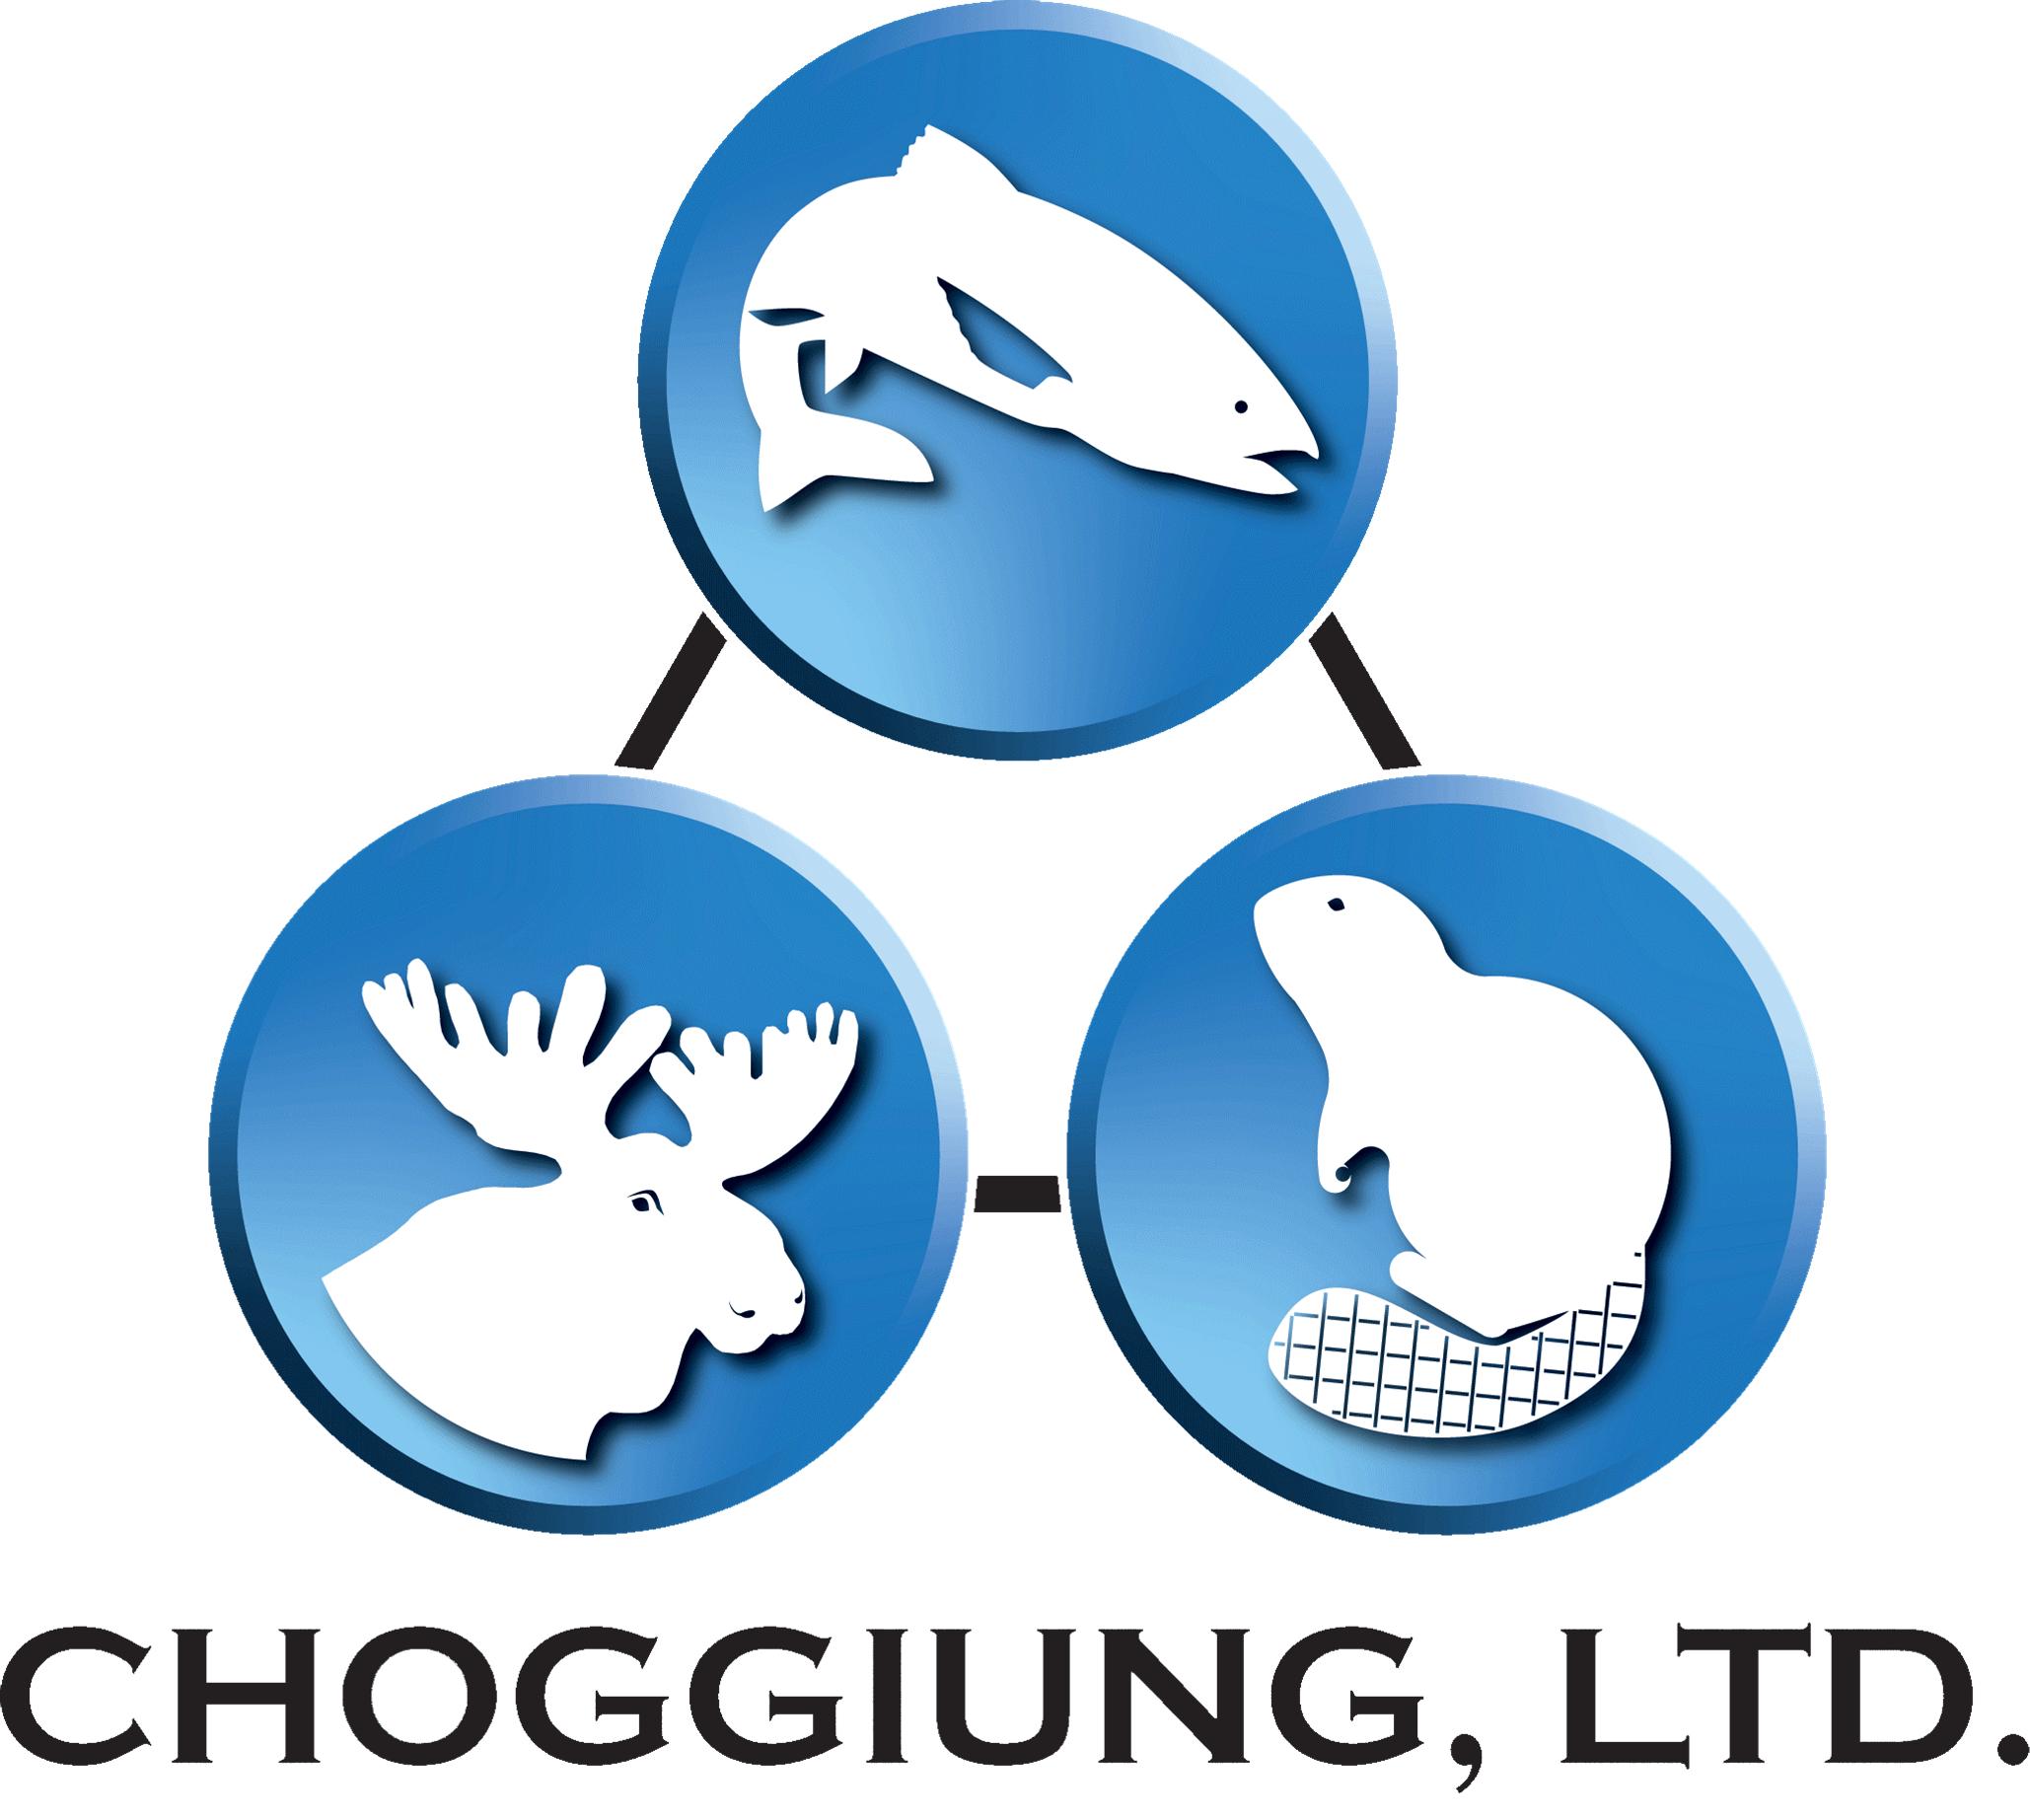 Choggiung Logo Transparent.jpg